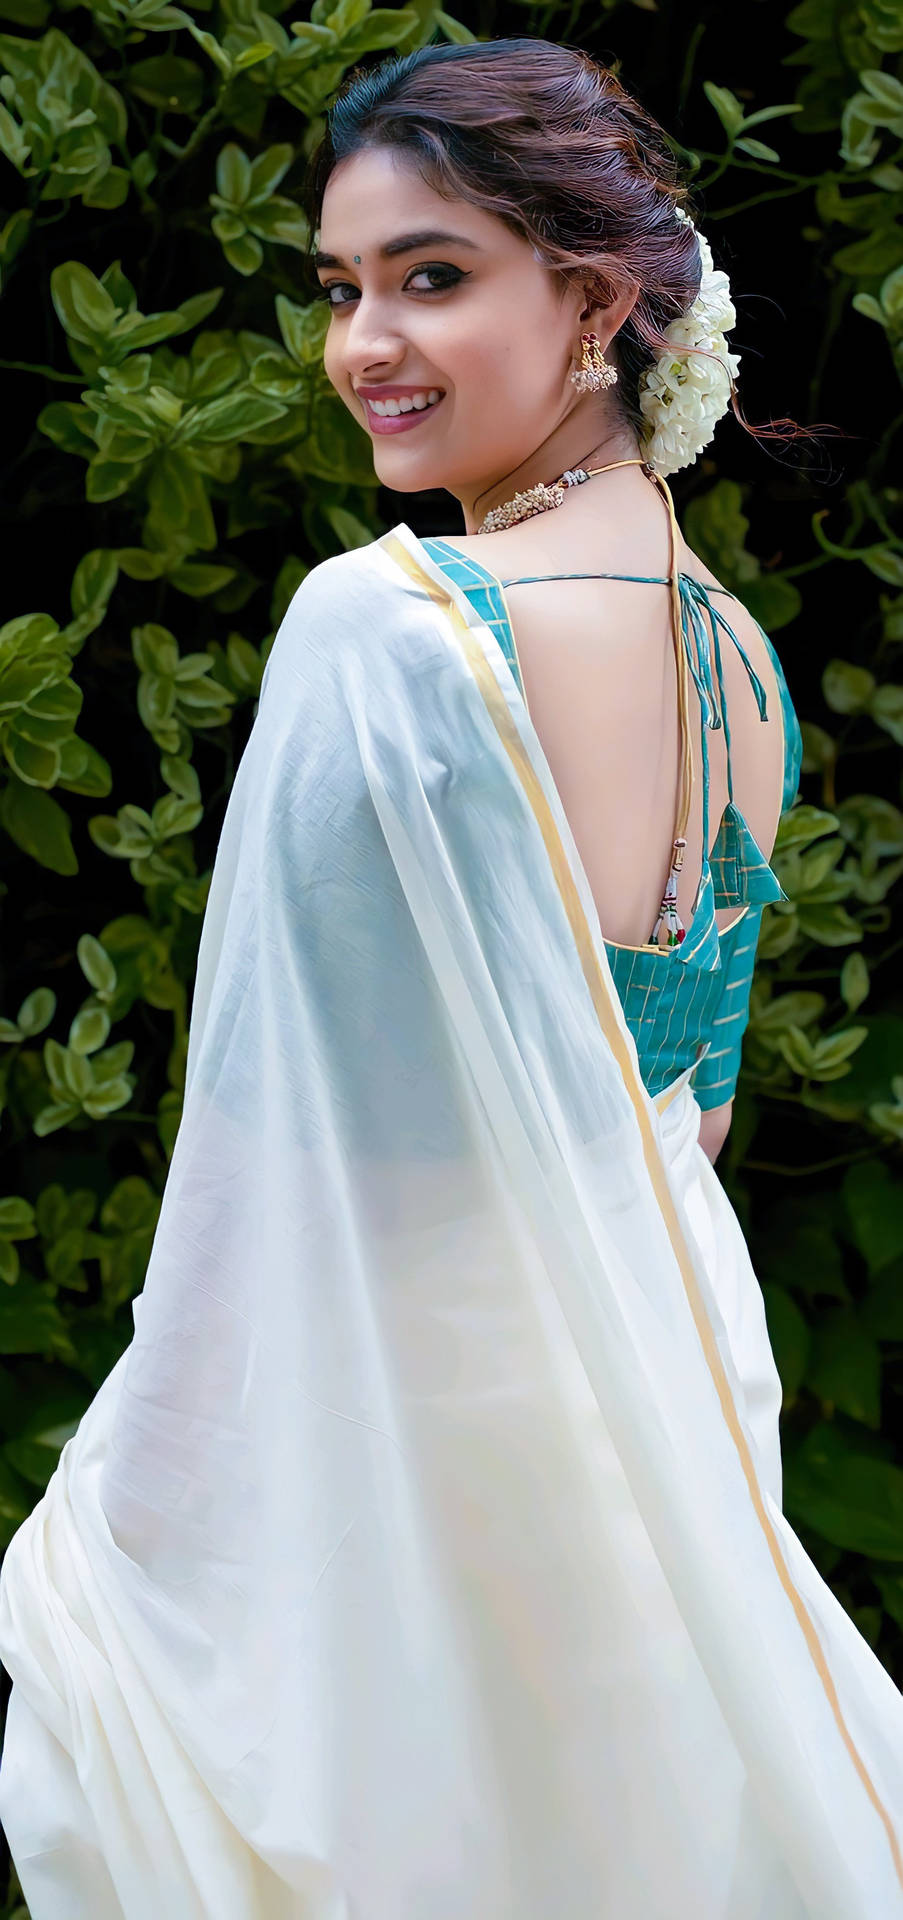 Keerthi Suresh Elegantly Dressed In A White Sari